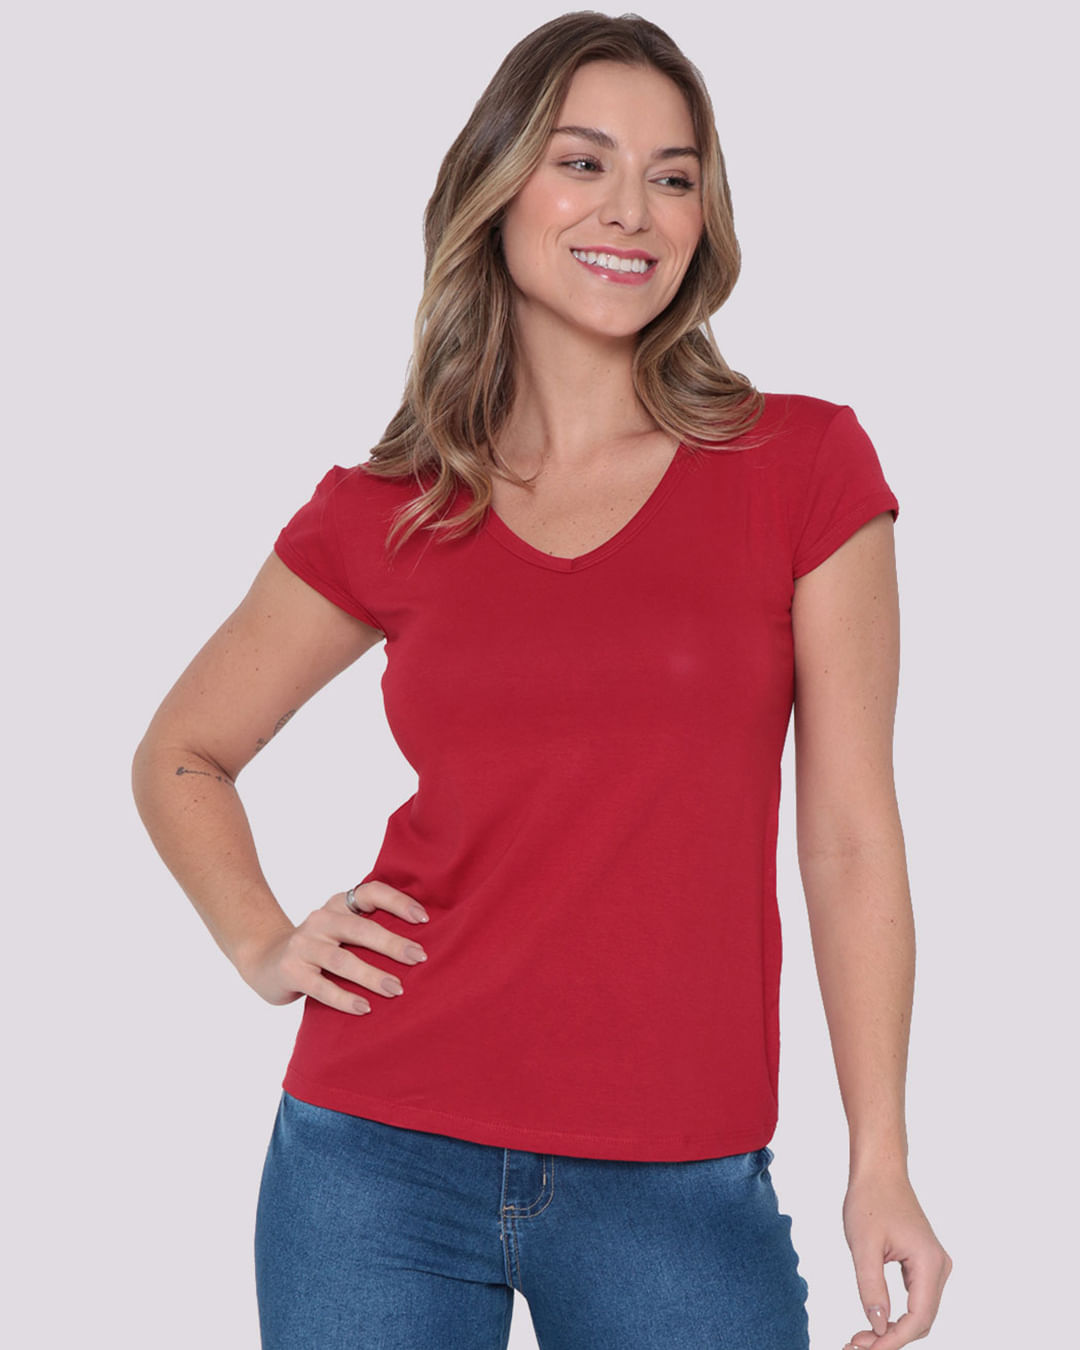 Blusa Feminina Decote V Básica Vermelha